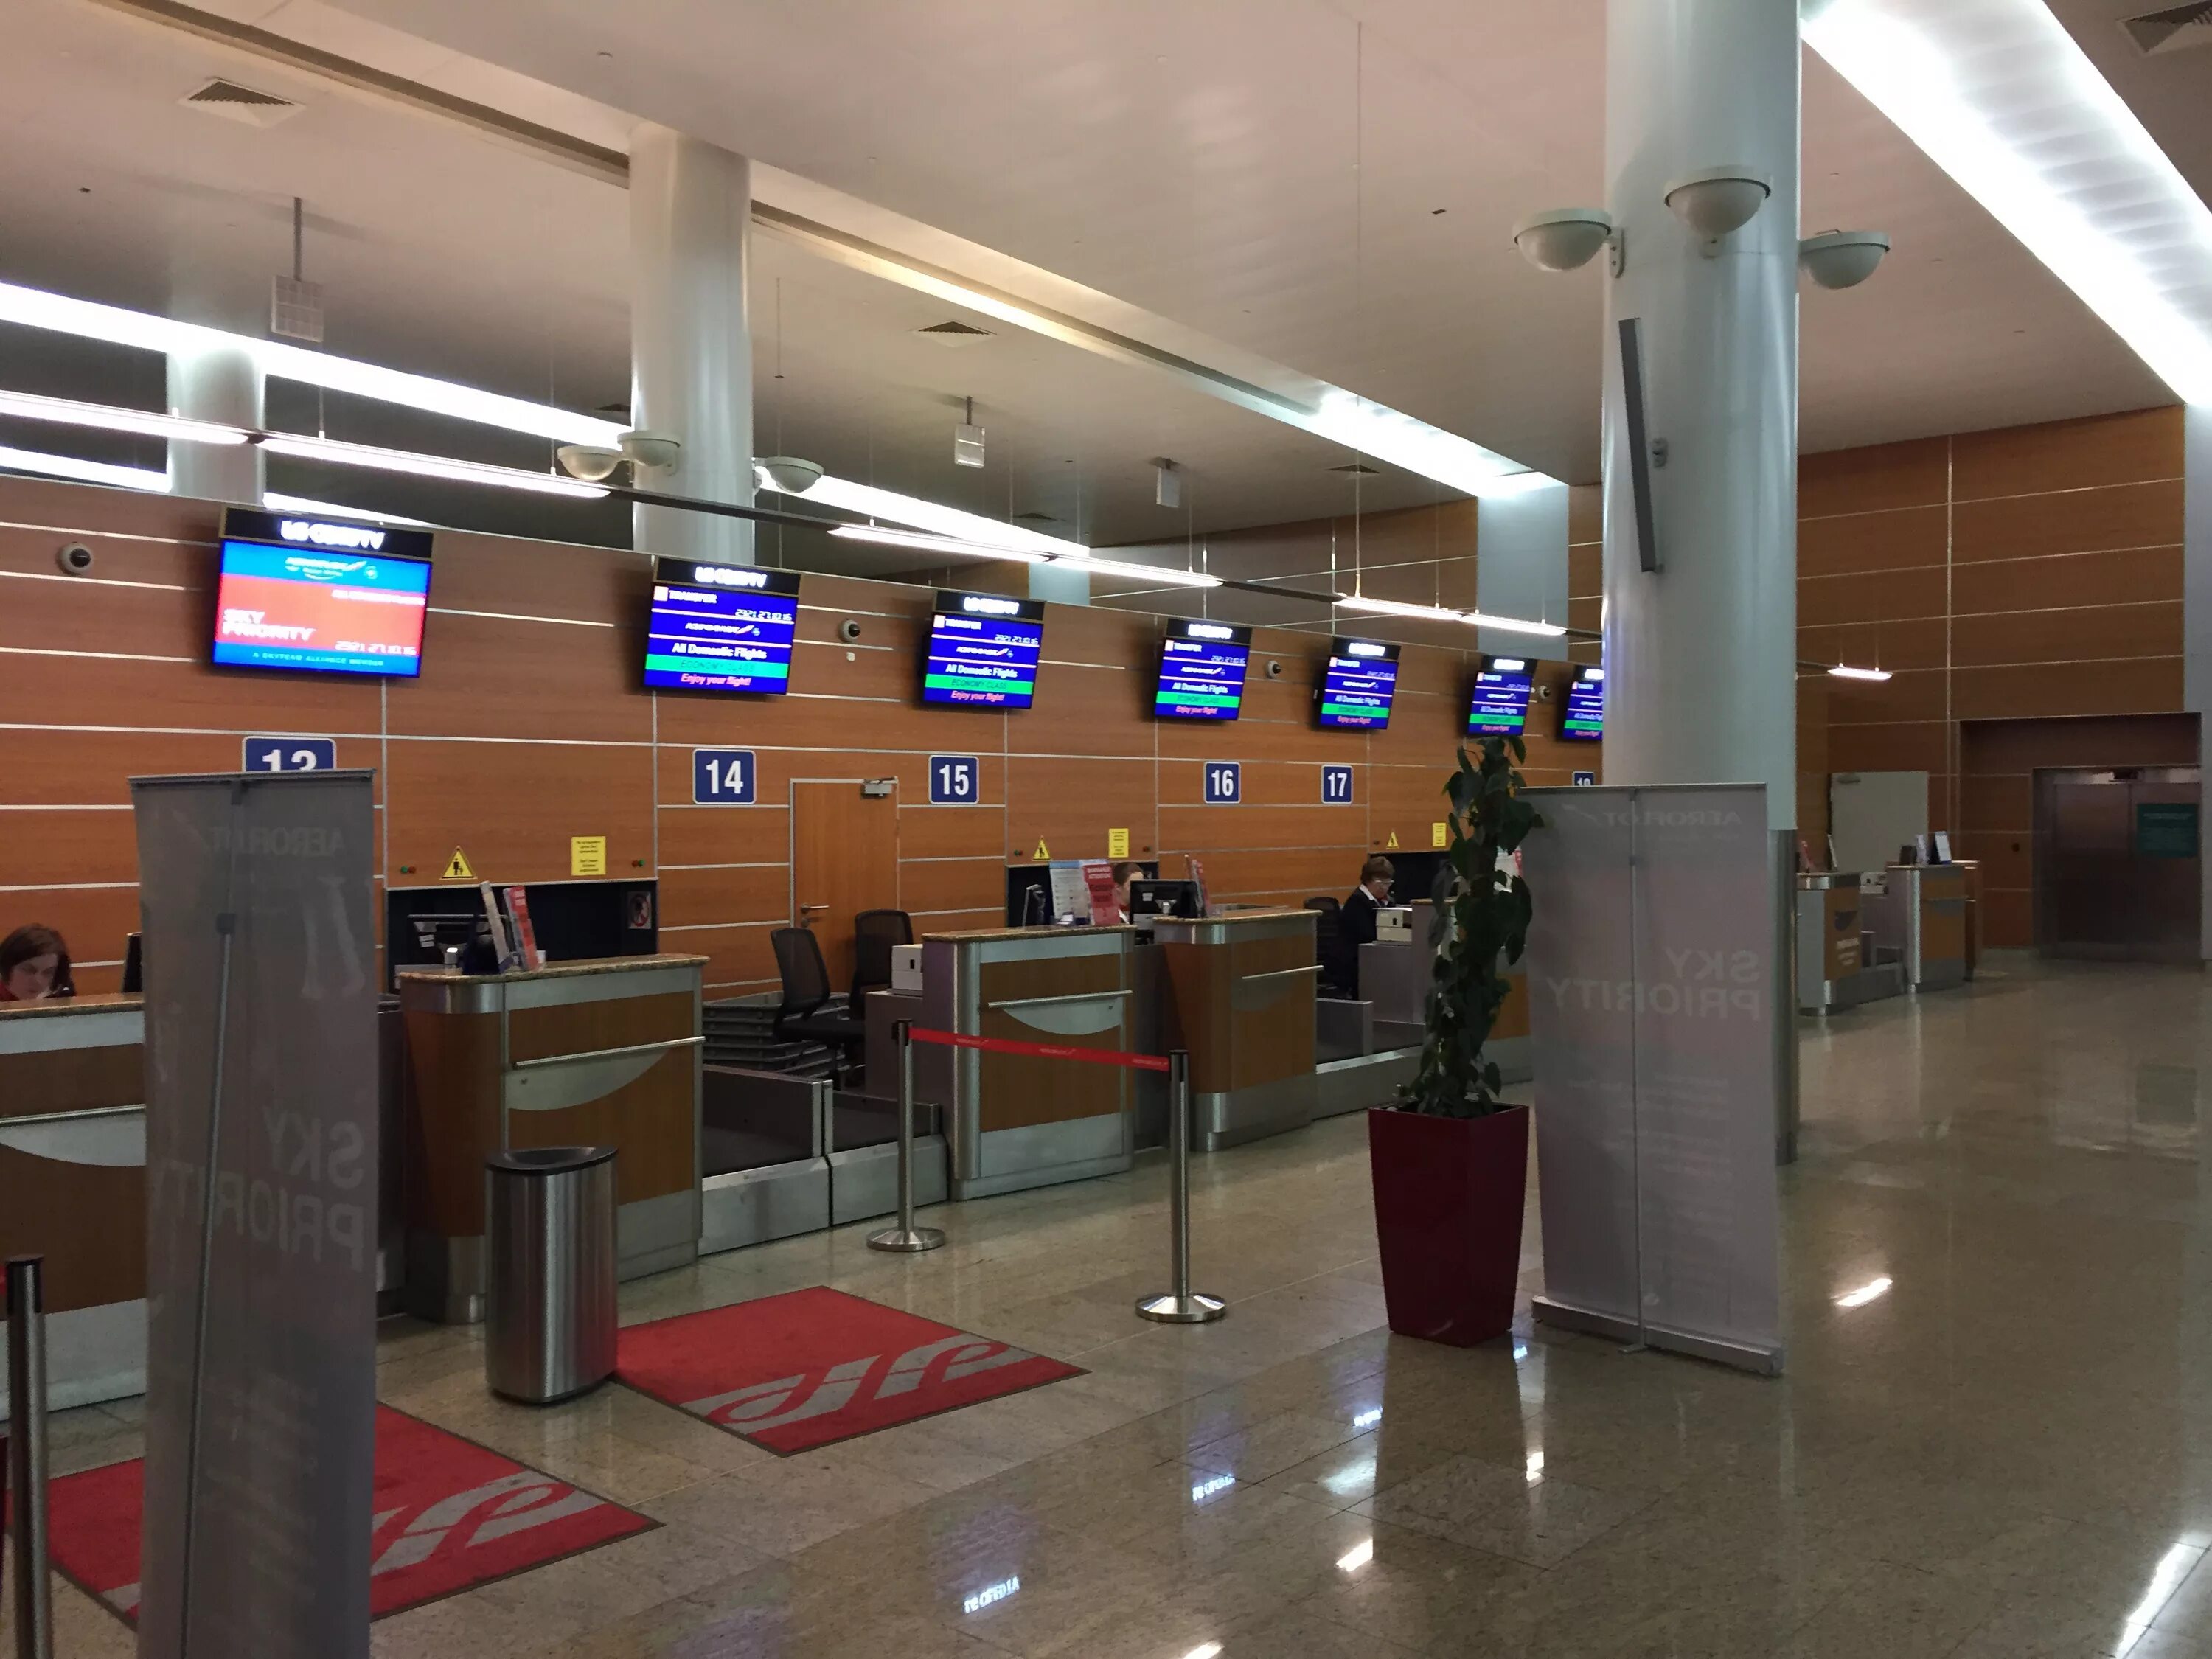 Аэропорт Шереметьево терминал д. Шереметьево терминал д внутри. Международный аэропорт Шереметьево, терминал d, Химки. Шереметьево изнутри терминал д. Зал вылета шереметьево